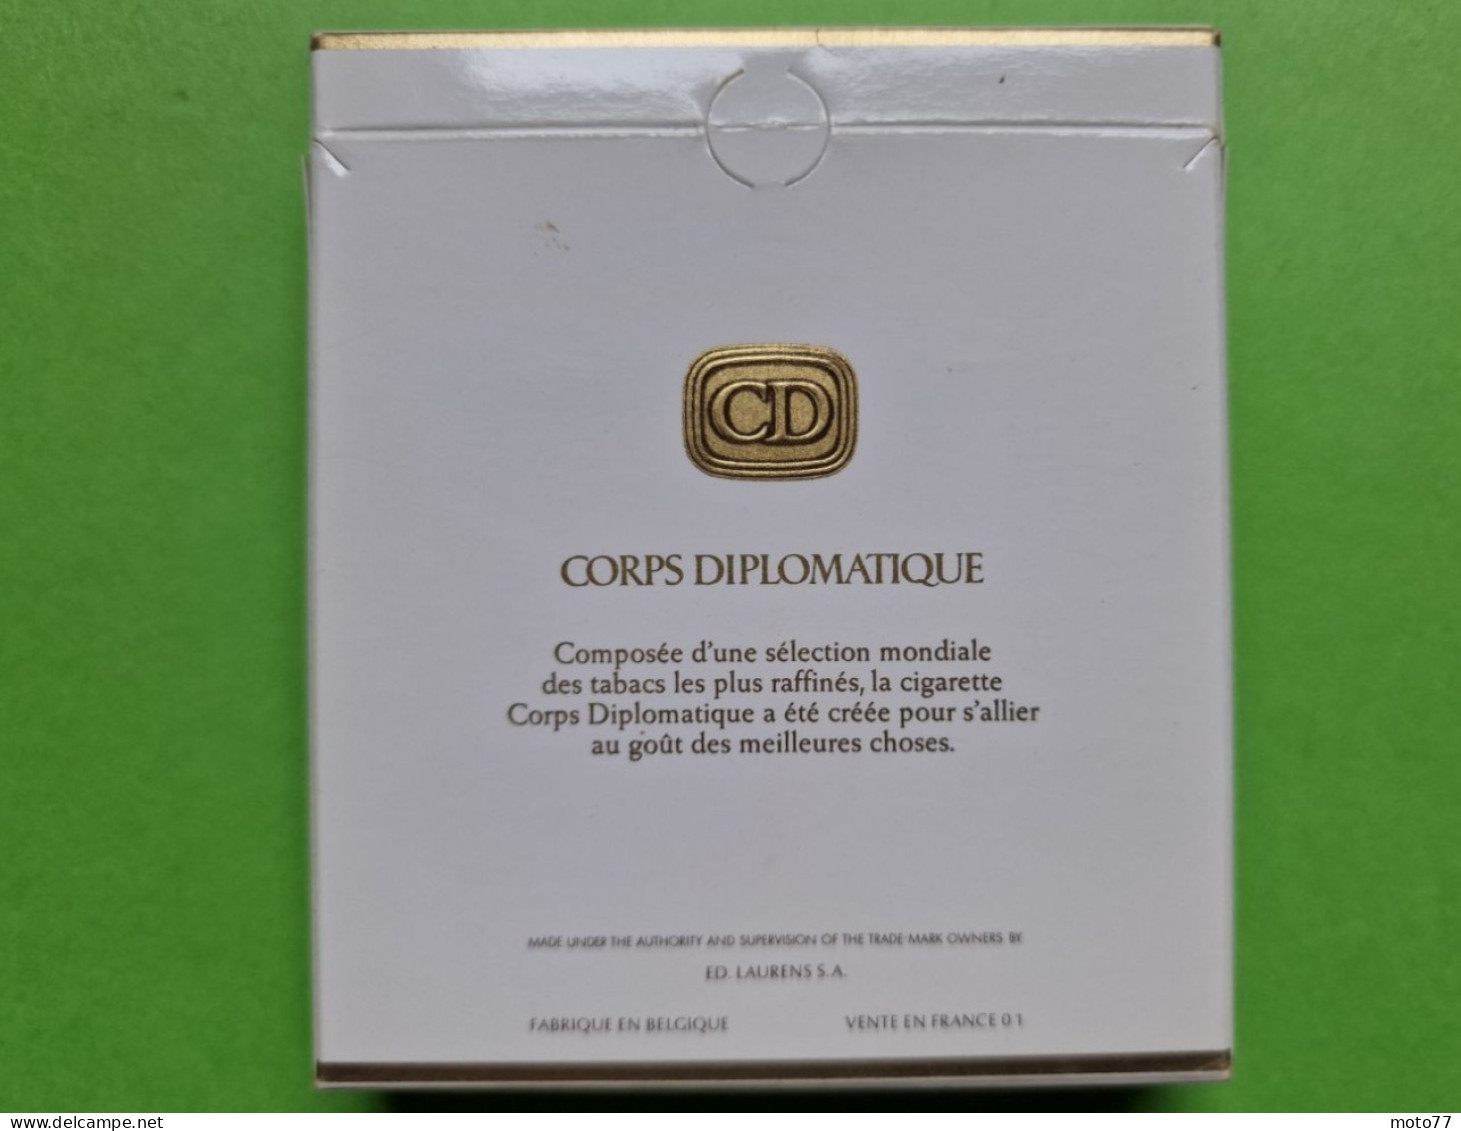 Ancien PAQUET De CIGARETTES Vide - CD CORPS DIPLOMATIQUE - Vers 1980 - Estuches Para Cigarrillos (vacios)